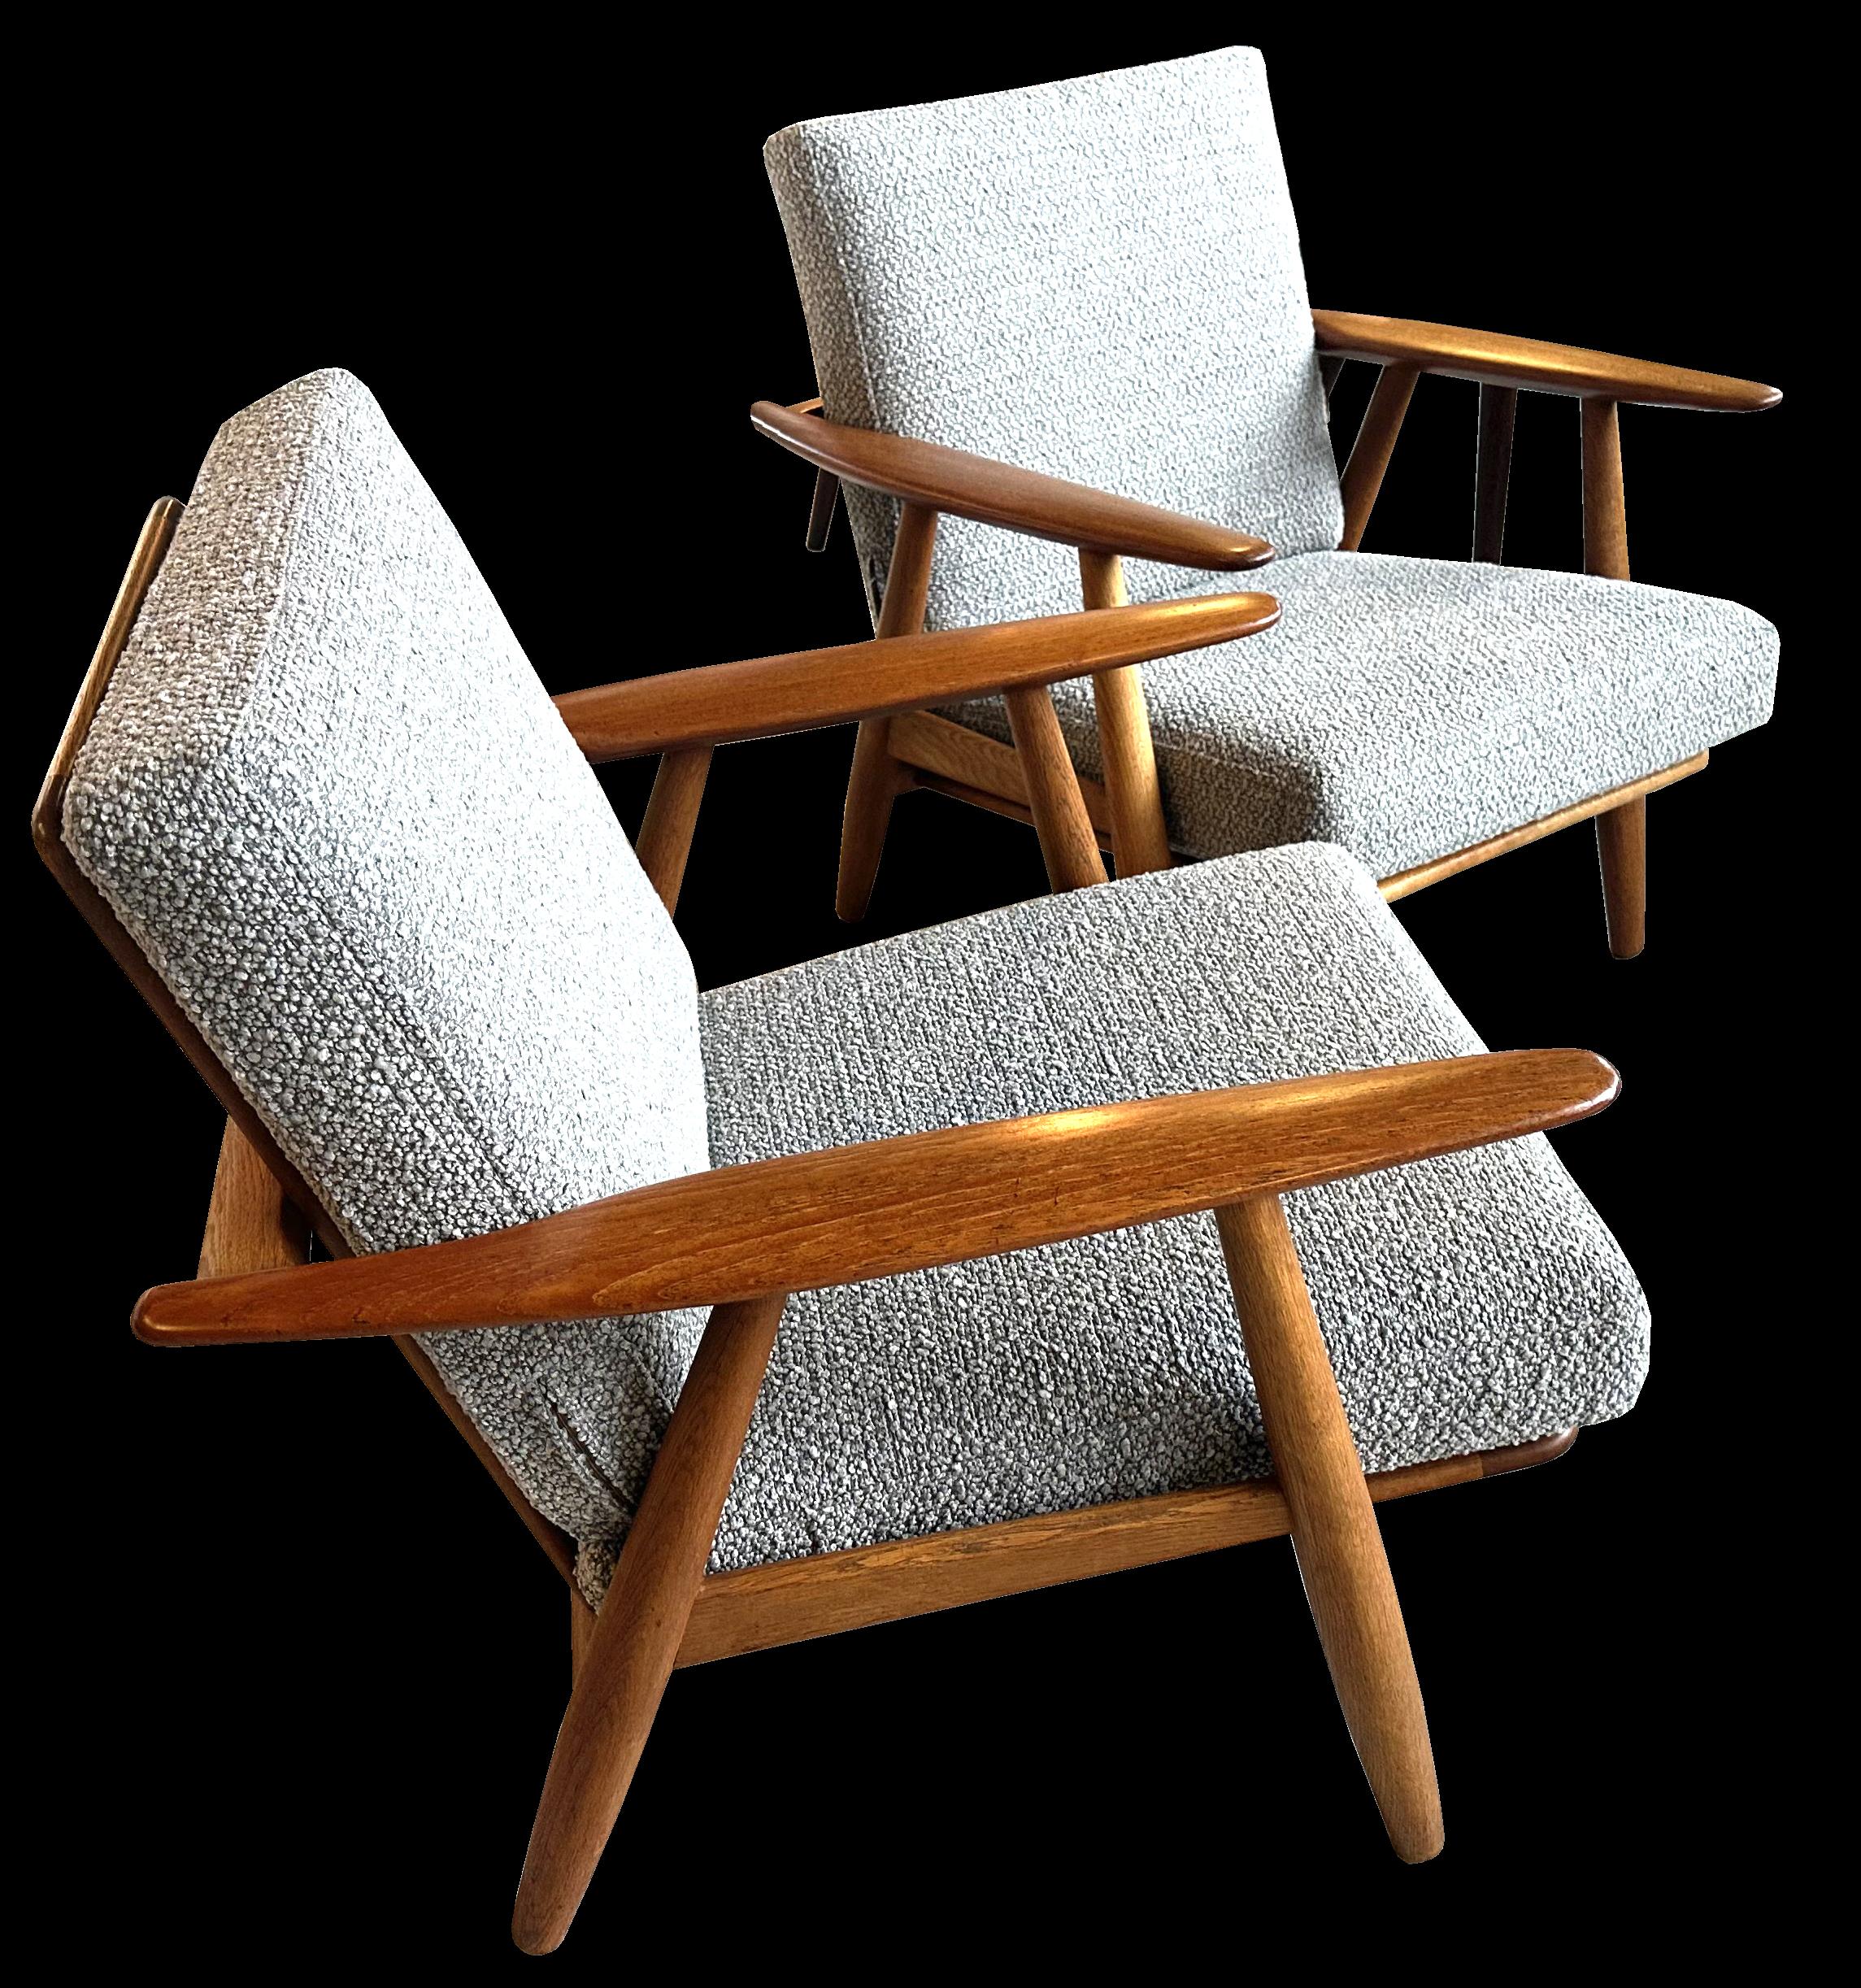 Pair of Oak Cigar Chairs Model Ge240 by Hans J. Wegner for GETAMA